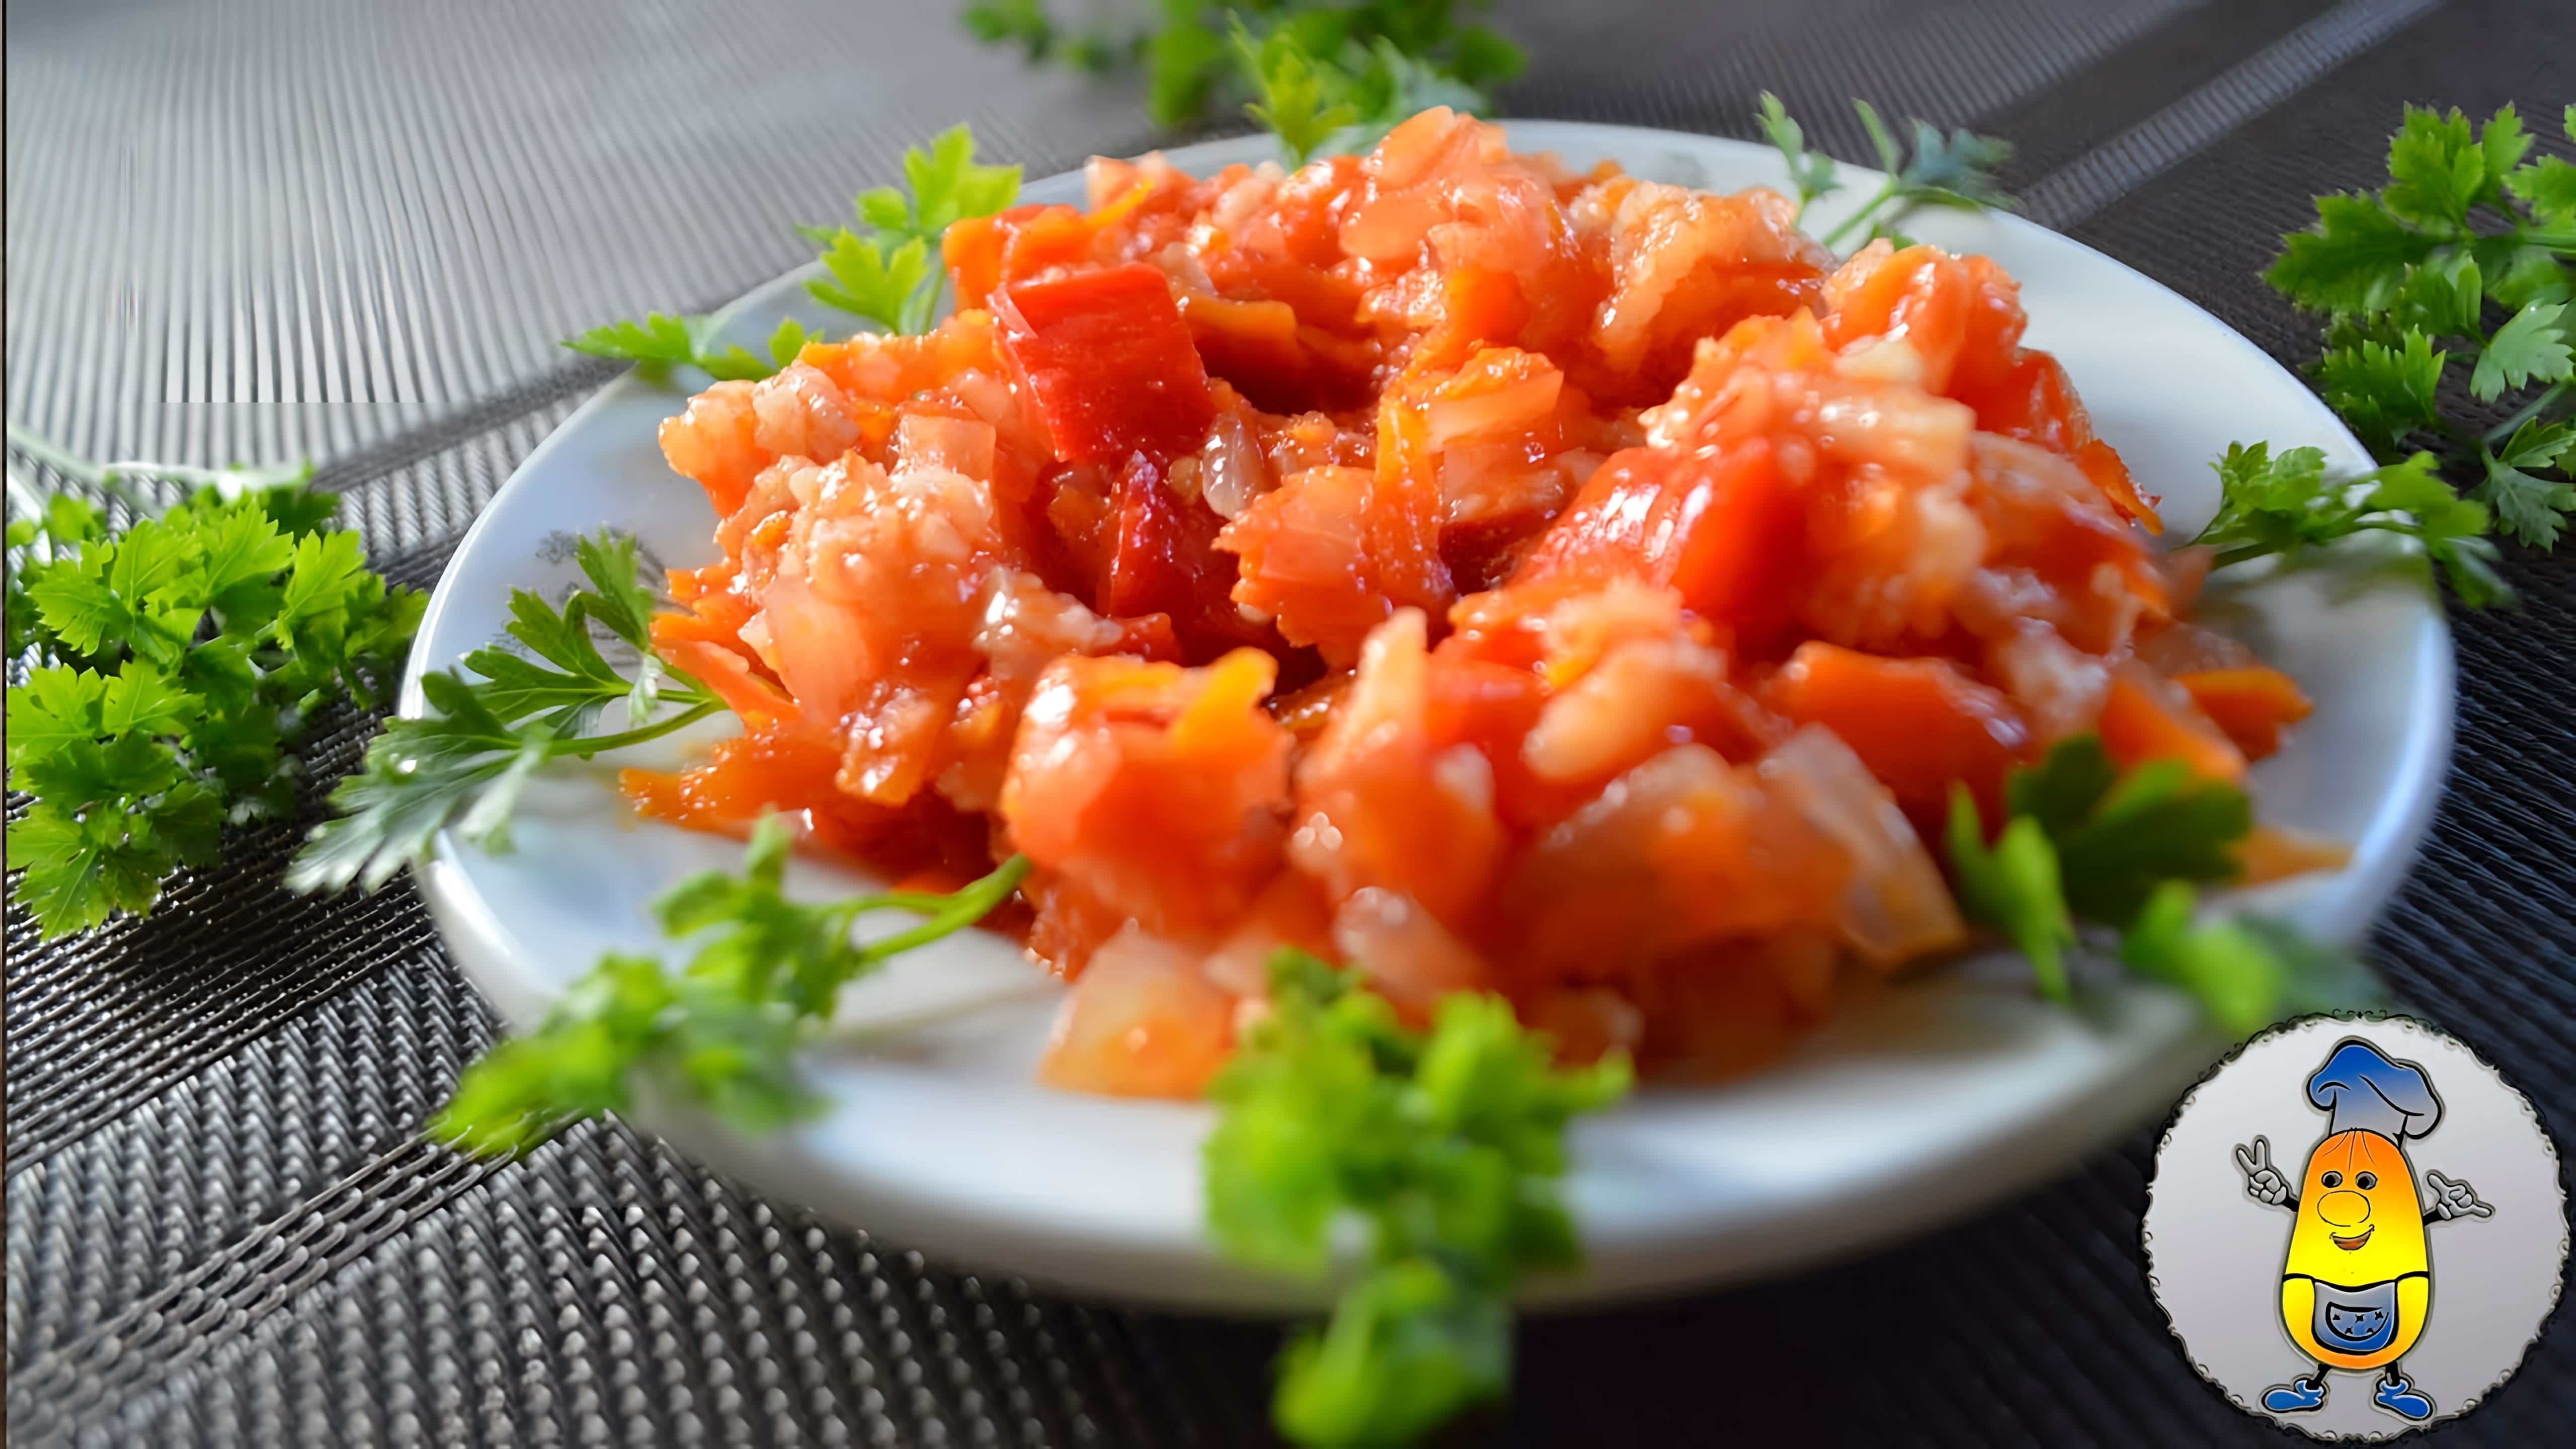 В данном видео представлен рецепт овощного салата с рисом, который можно заготовить на зиму